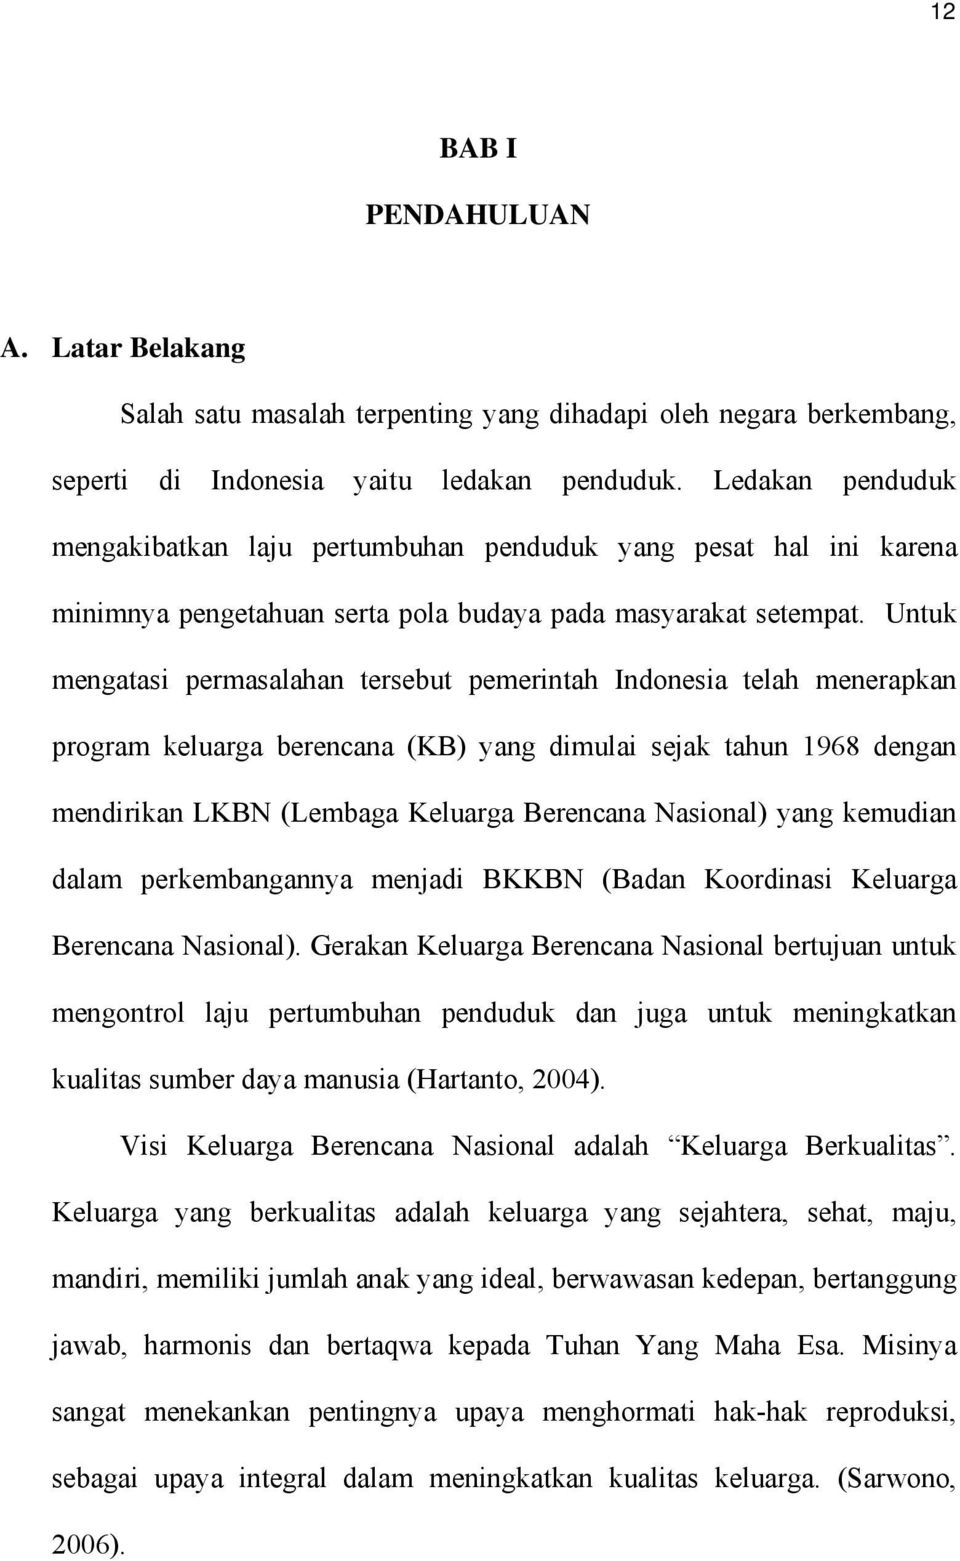 Untuk mengatasi permasalahan tersebut pemerintah Indonesia telah menerapkan program keluarga berencana (KB) yang dimulai sejak tahun 1968 dengan mendirikan LKBN (Lembaga Keluarga Berencana Nasional)